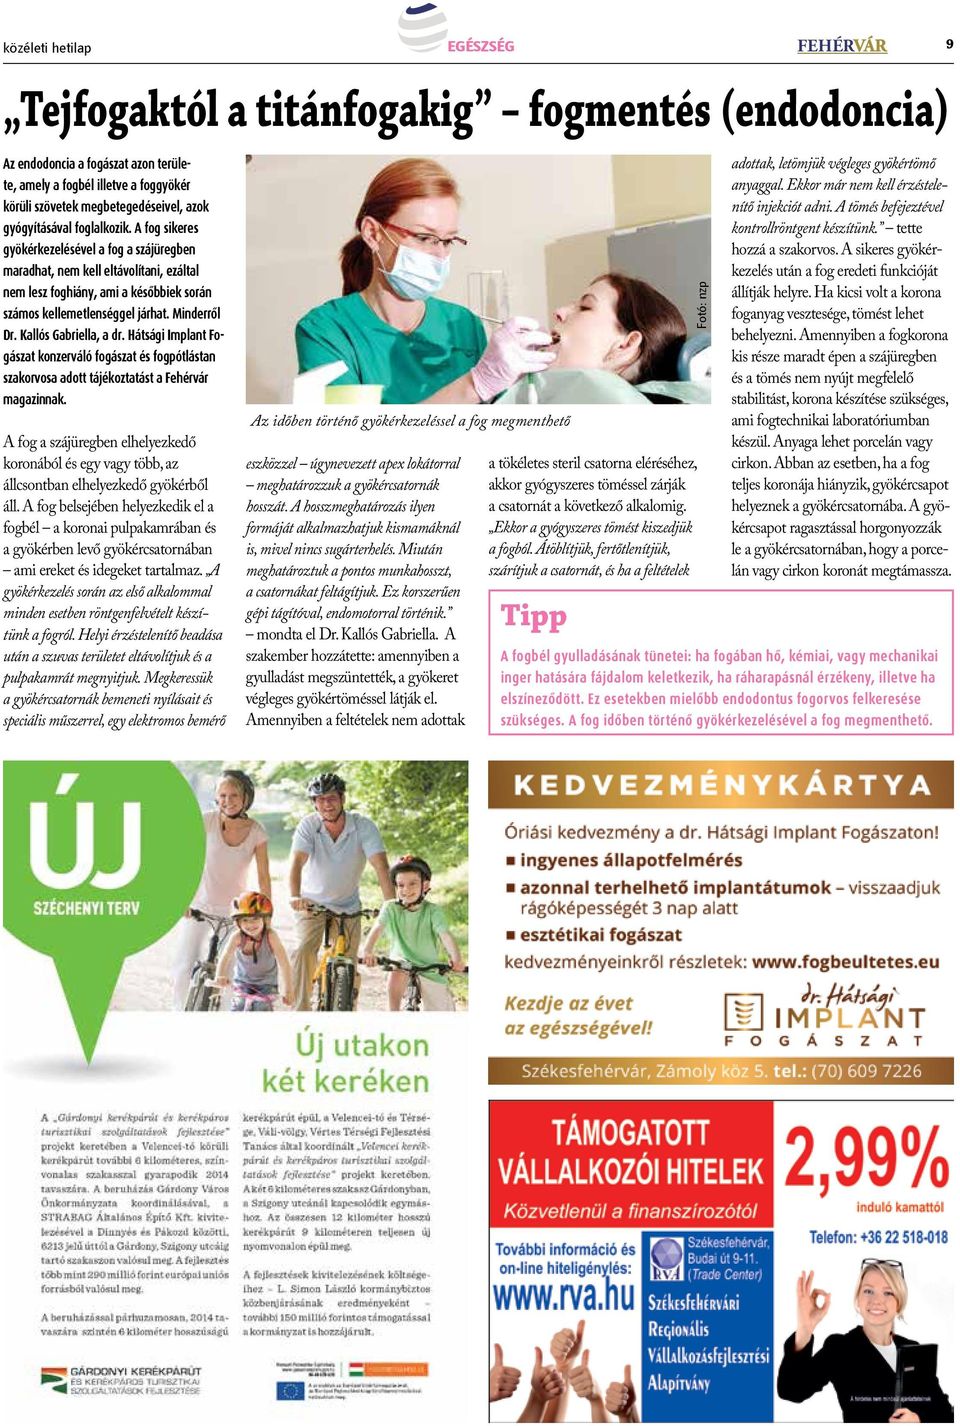 Minderről Dr. Kallós Gabriella, a dr. Hátsági Implant Fogászat konzerváló fogászat és fogpótlástan szakorvosa adott tájékoztatást a Fehérvár magazinnak.